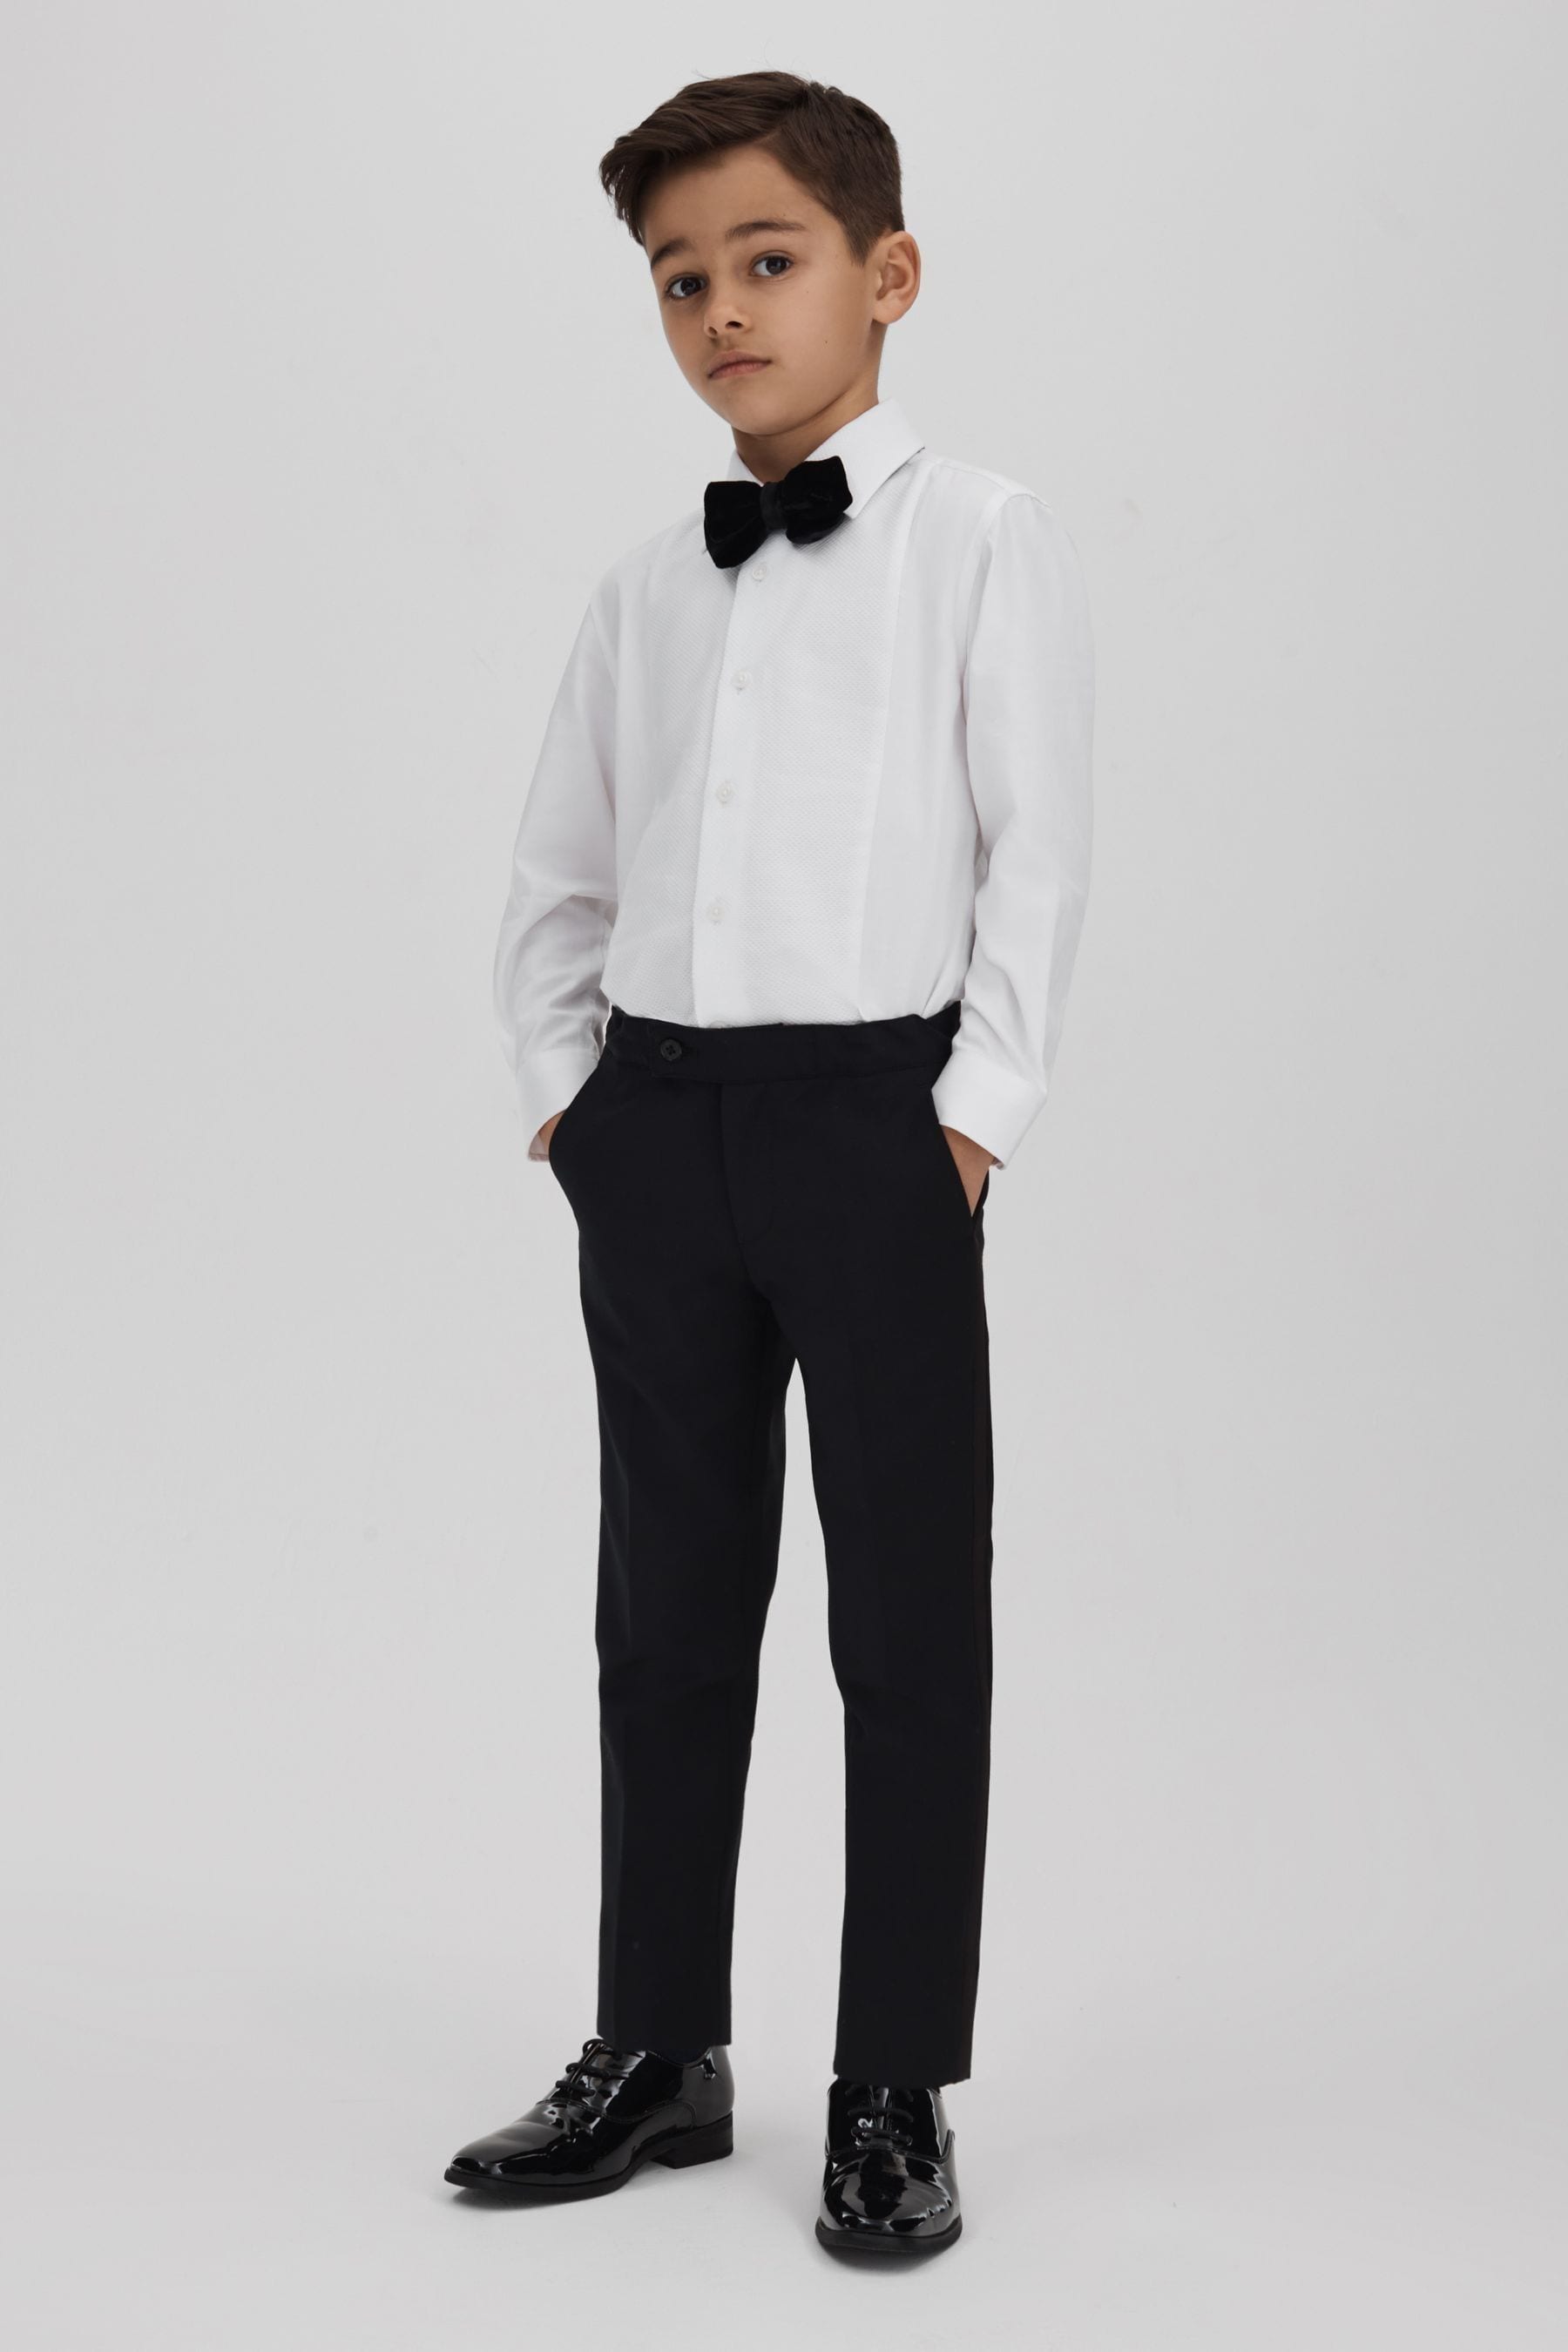 Reiss Marcel - White Junior Slim Fit Dinner Shirt, Age 6-7 Years